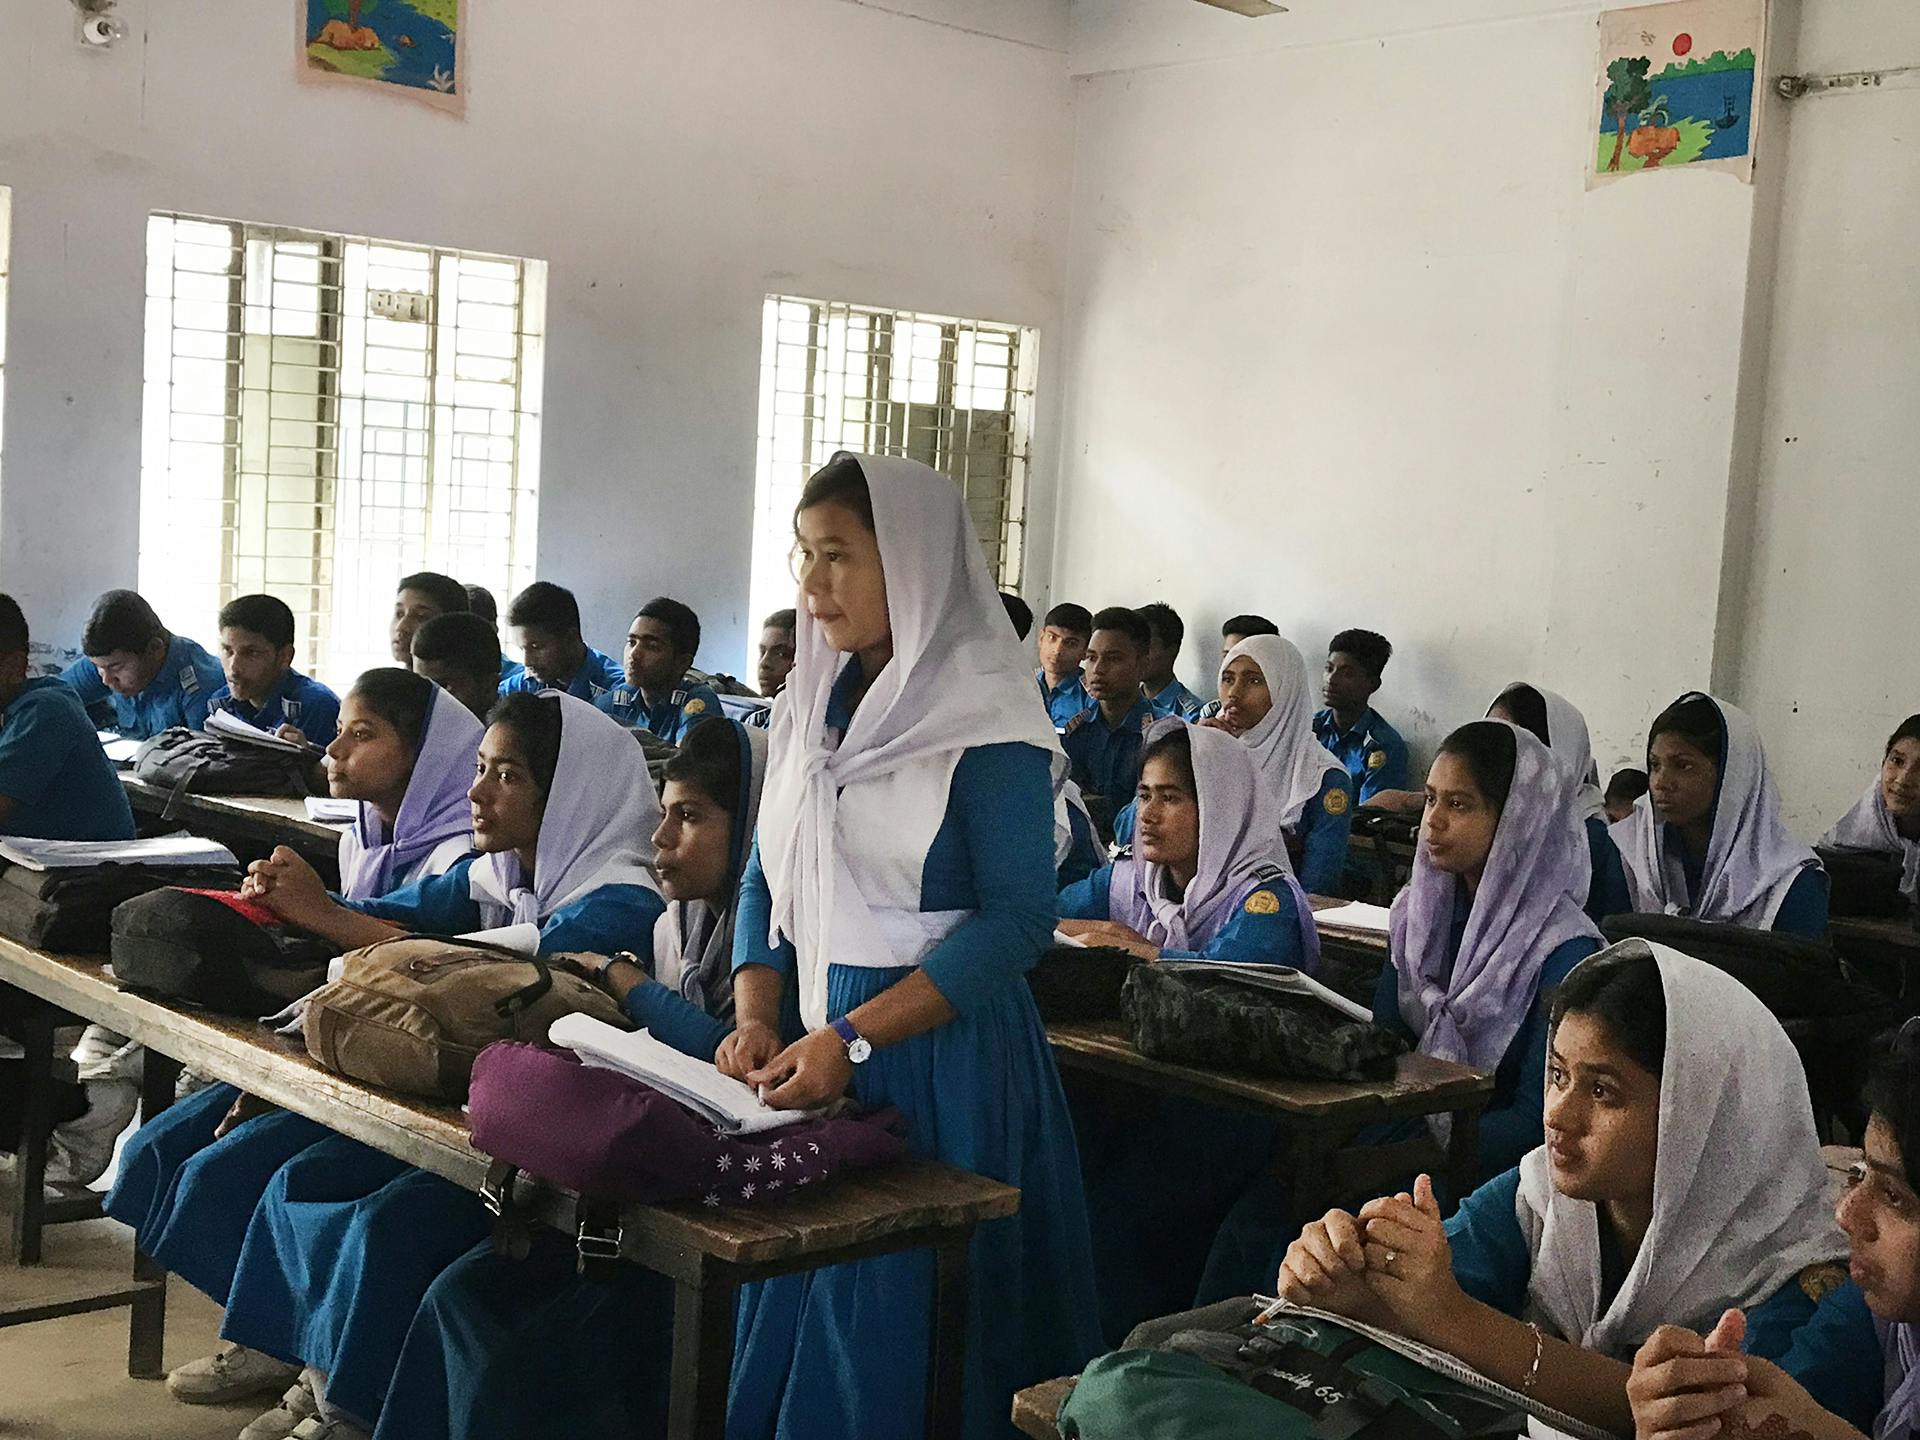 Ett klassrum i Bangladesh med flickor och pojkar i skoluniformer.